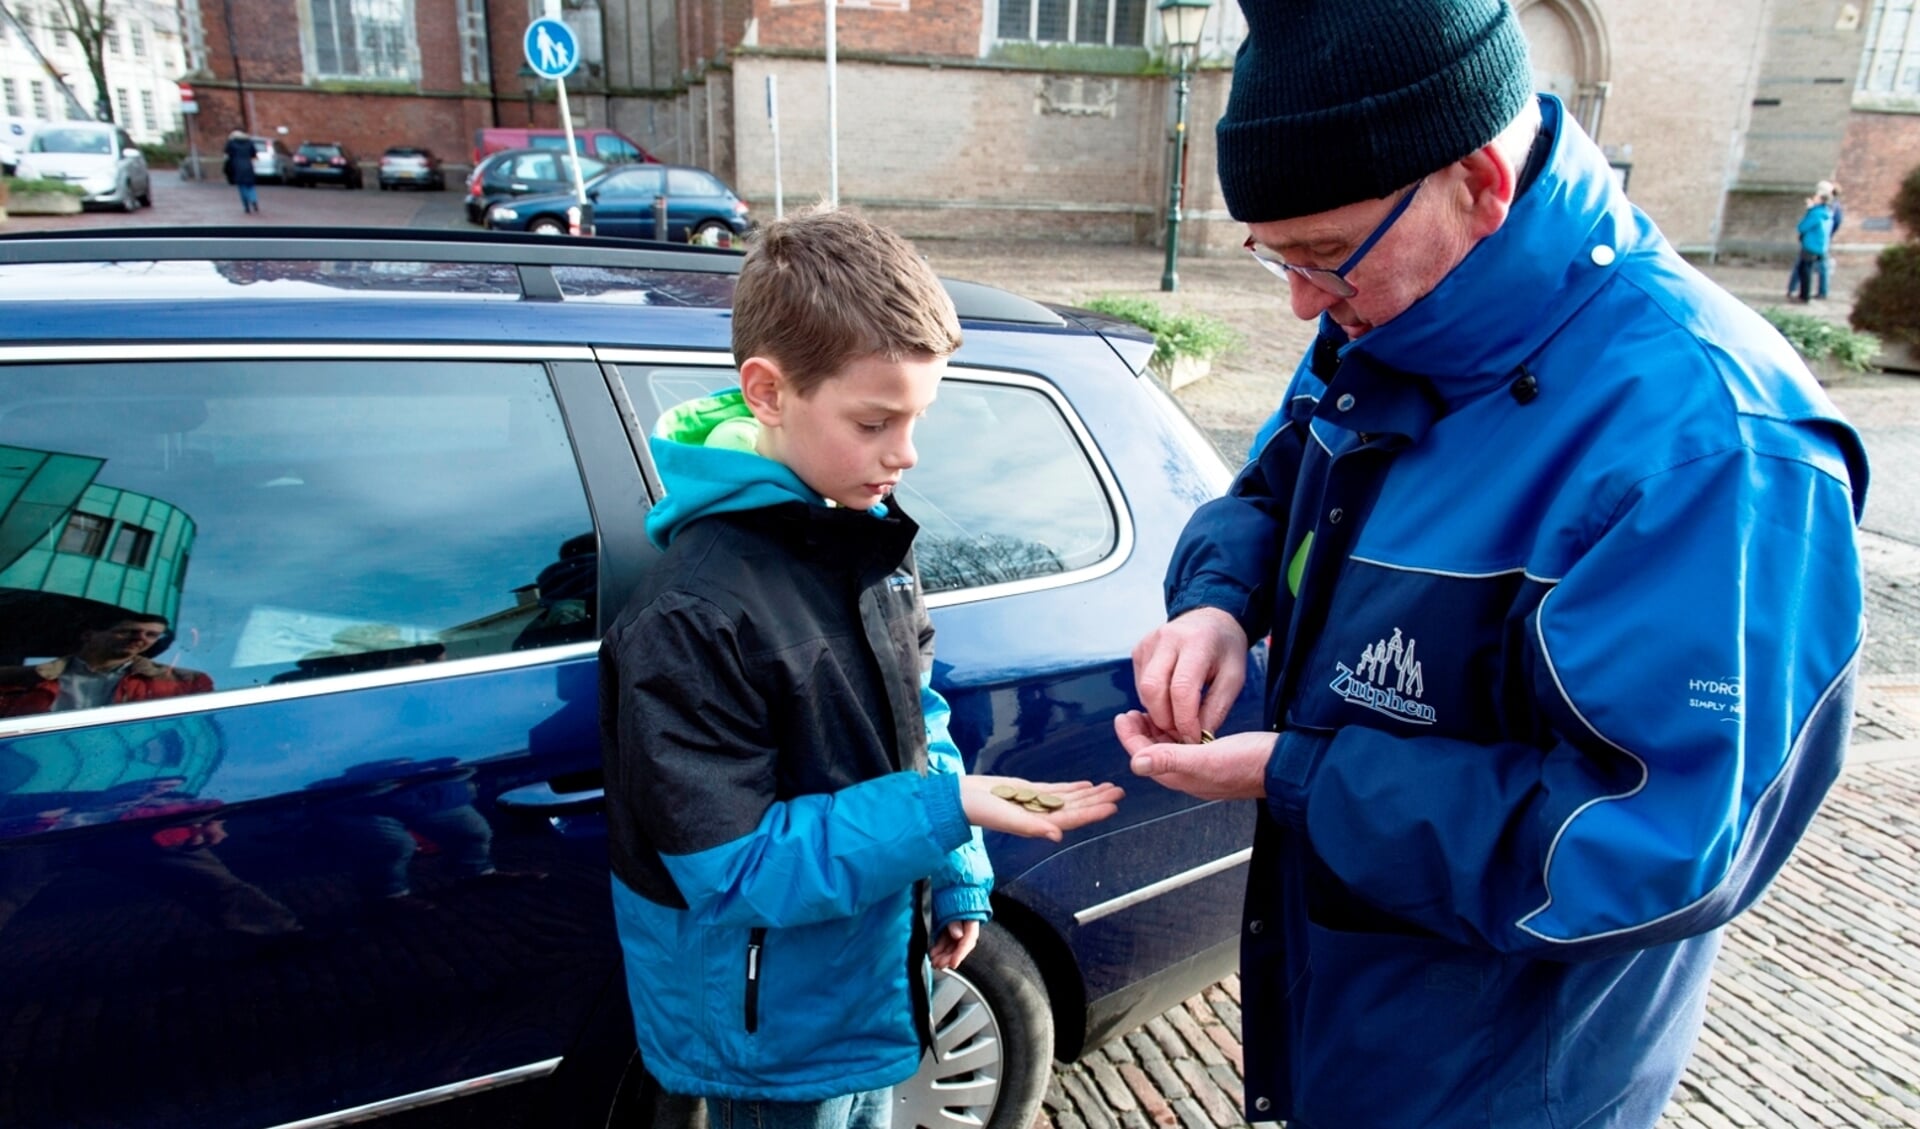 De jongeman krijgt voor elke ingeleverde zak vuurwerk 50 eurocent van de medewerker van de gemeente Zutphen. Foto: PR